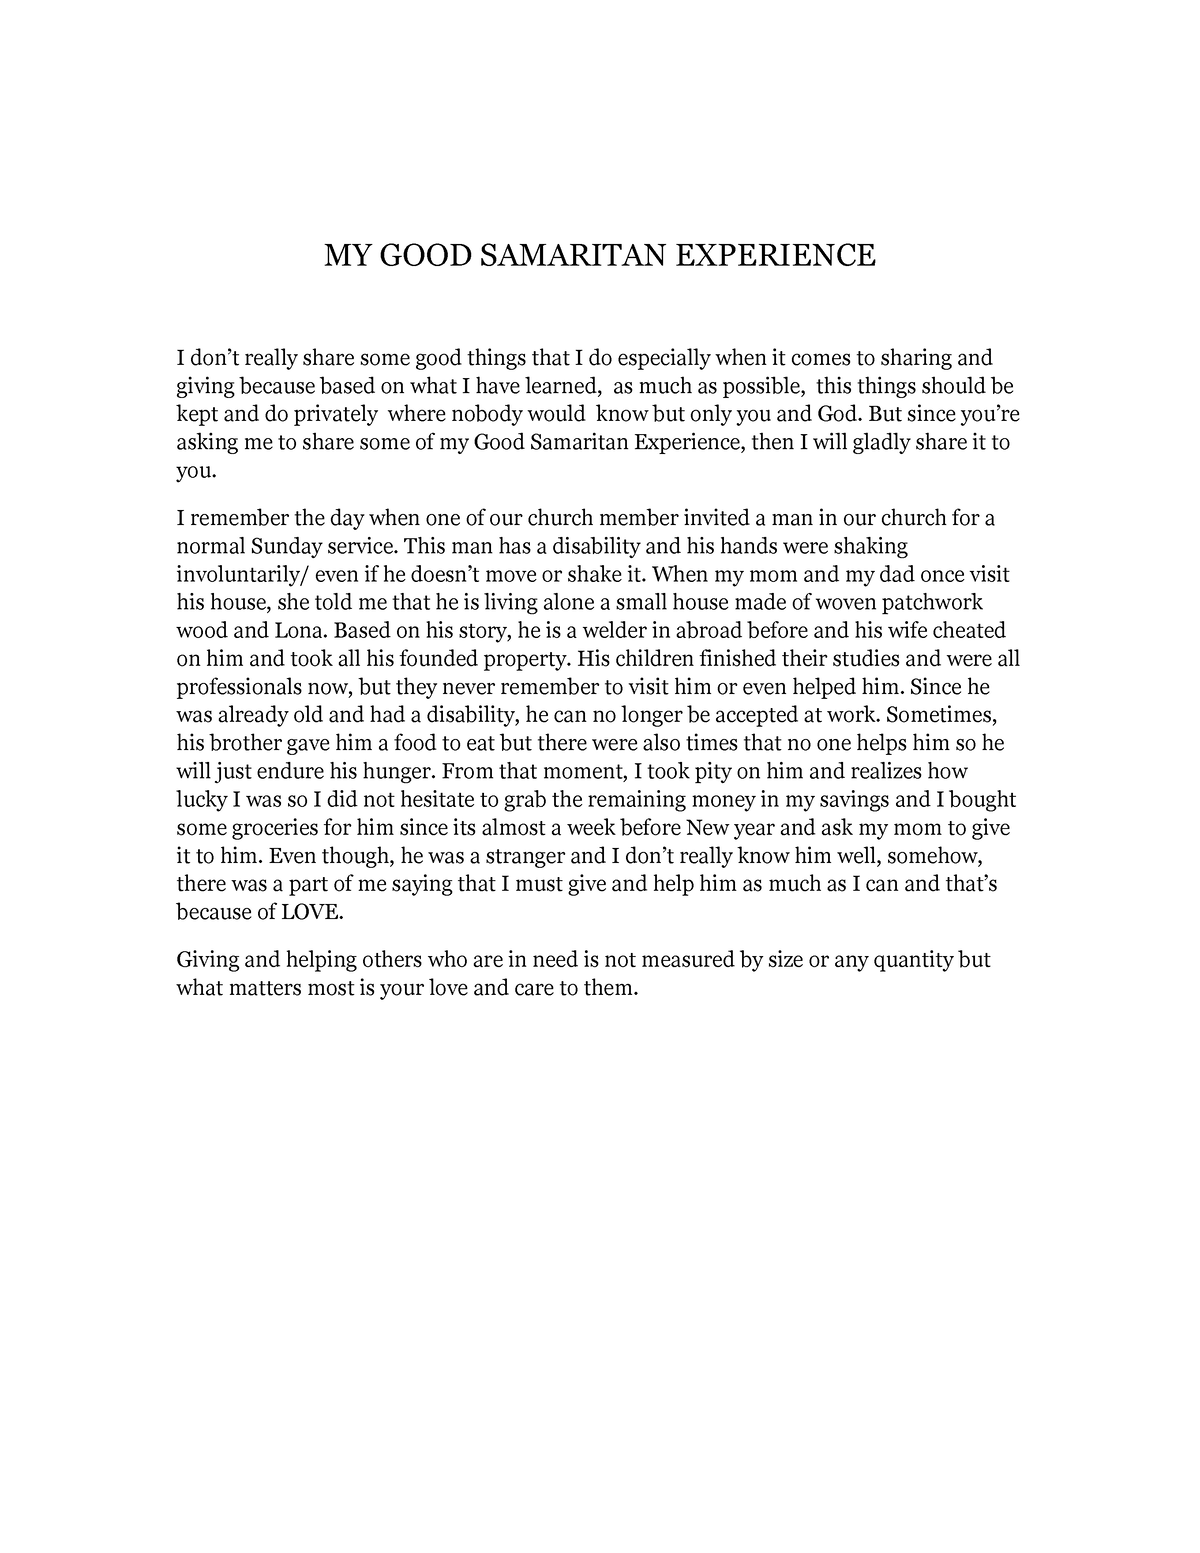 my good samaritan experience essay brainly